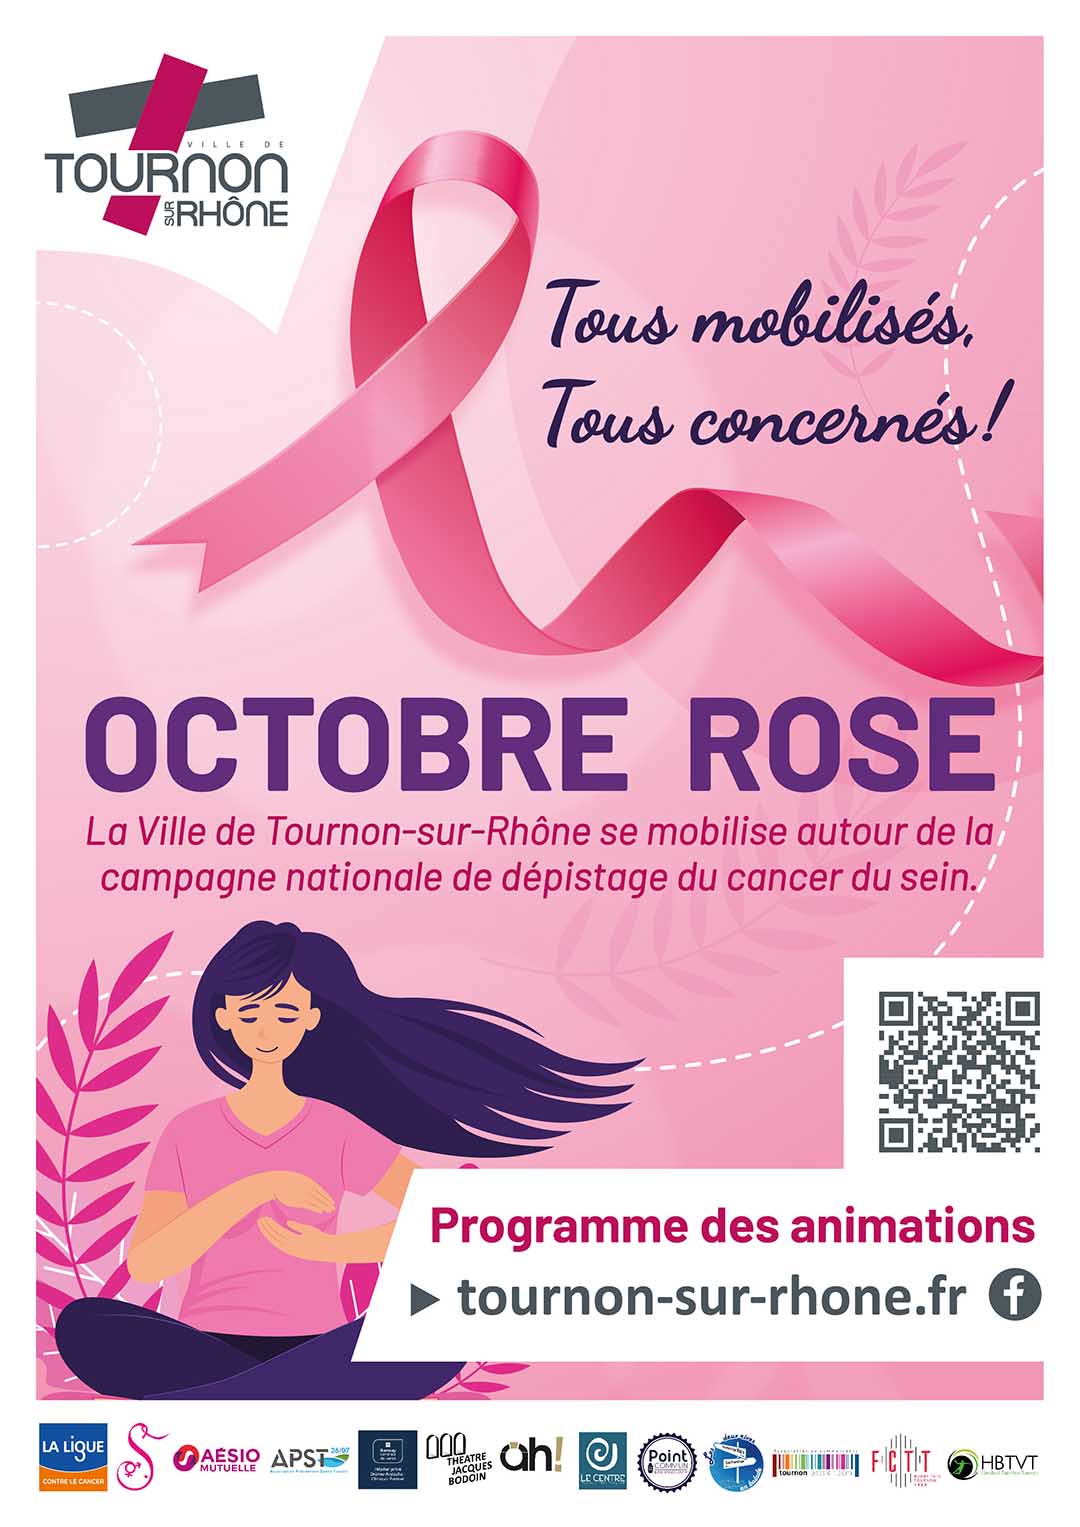 La Ville de Tournon-sur-Rhône se mobilise autour de la campagne nationale d’Octobre rose, mois de sensibilisation au dépistage du cancer du sein.